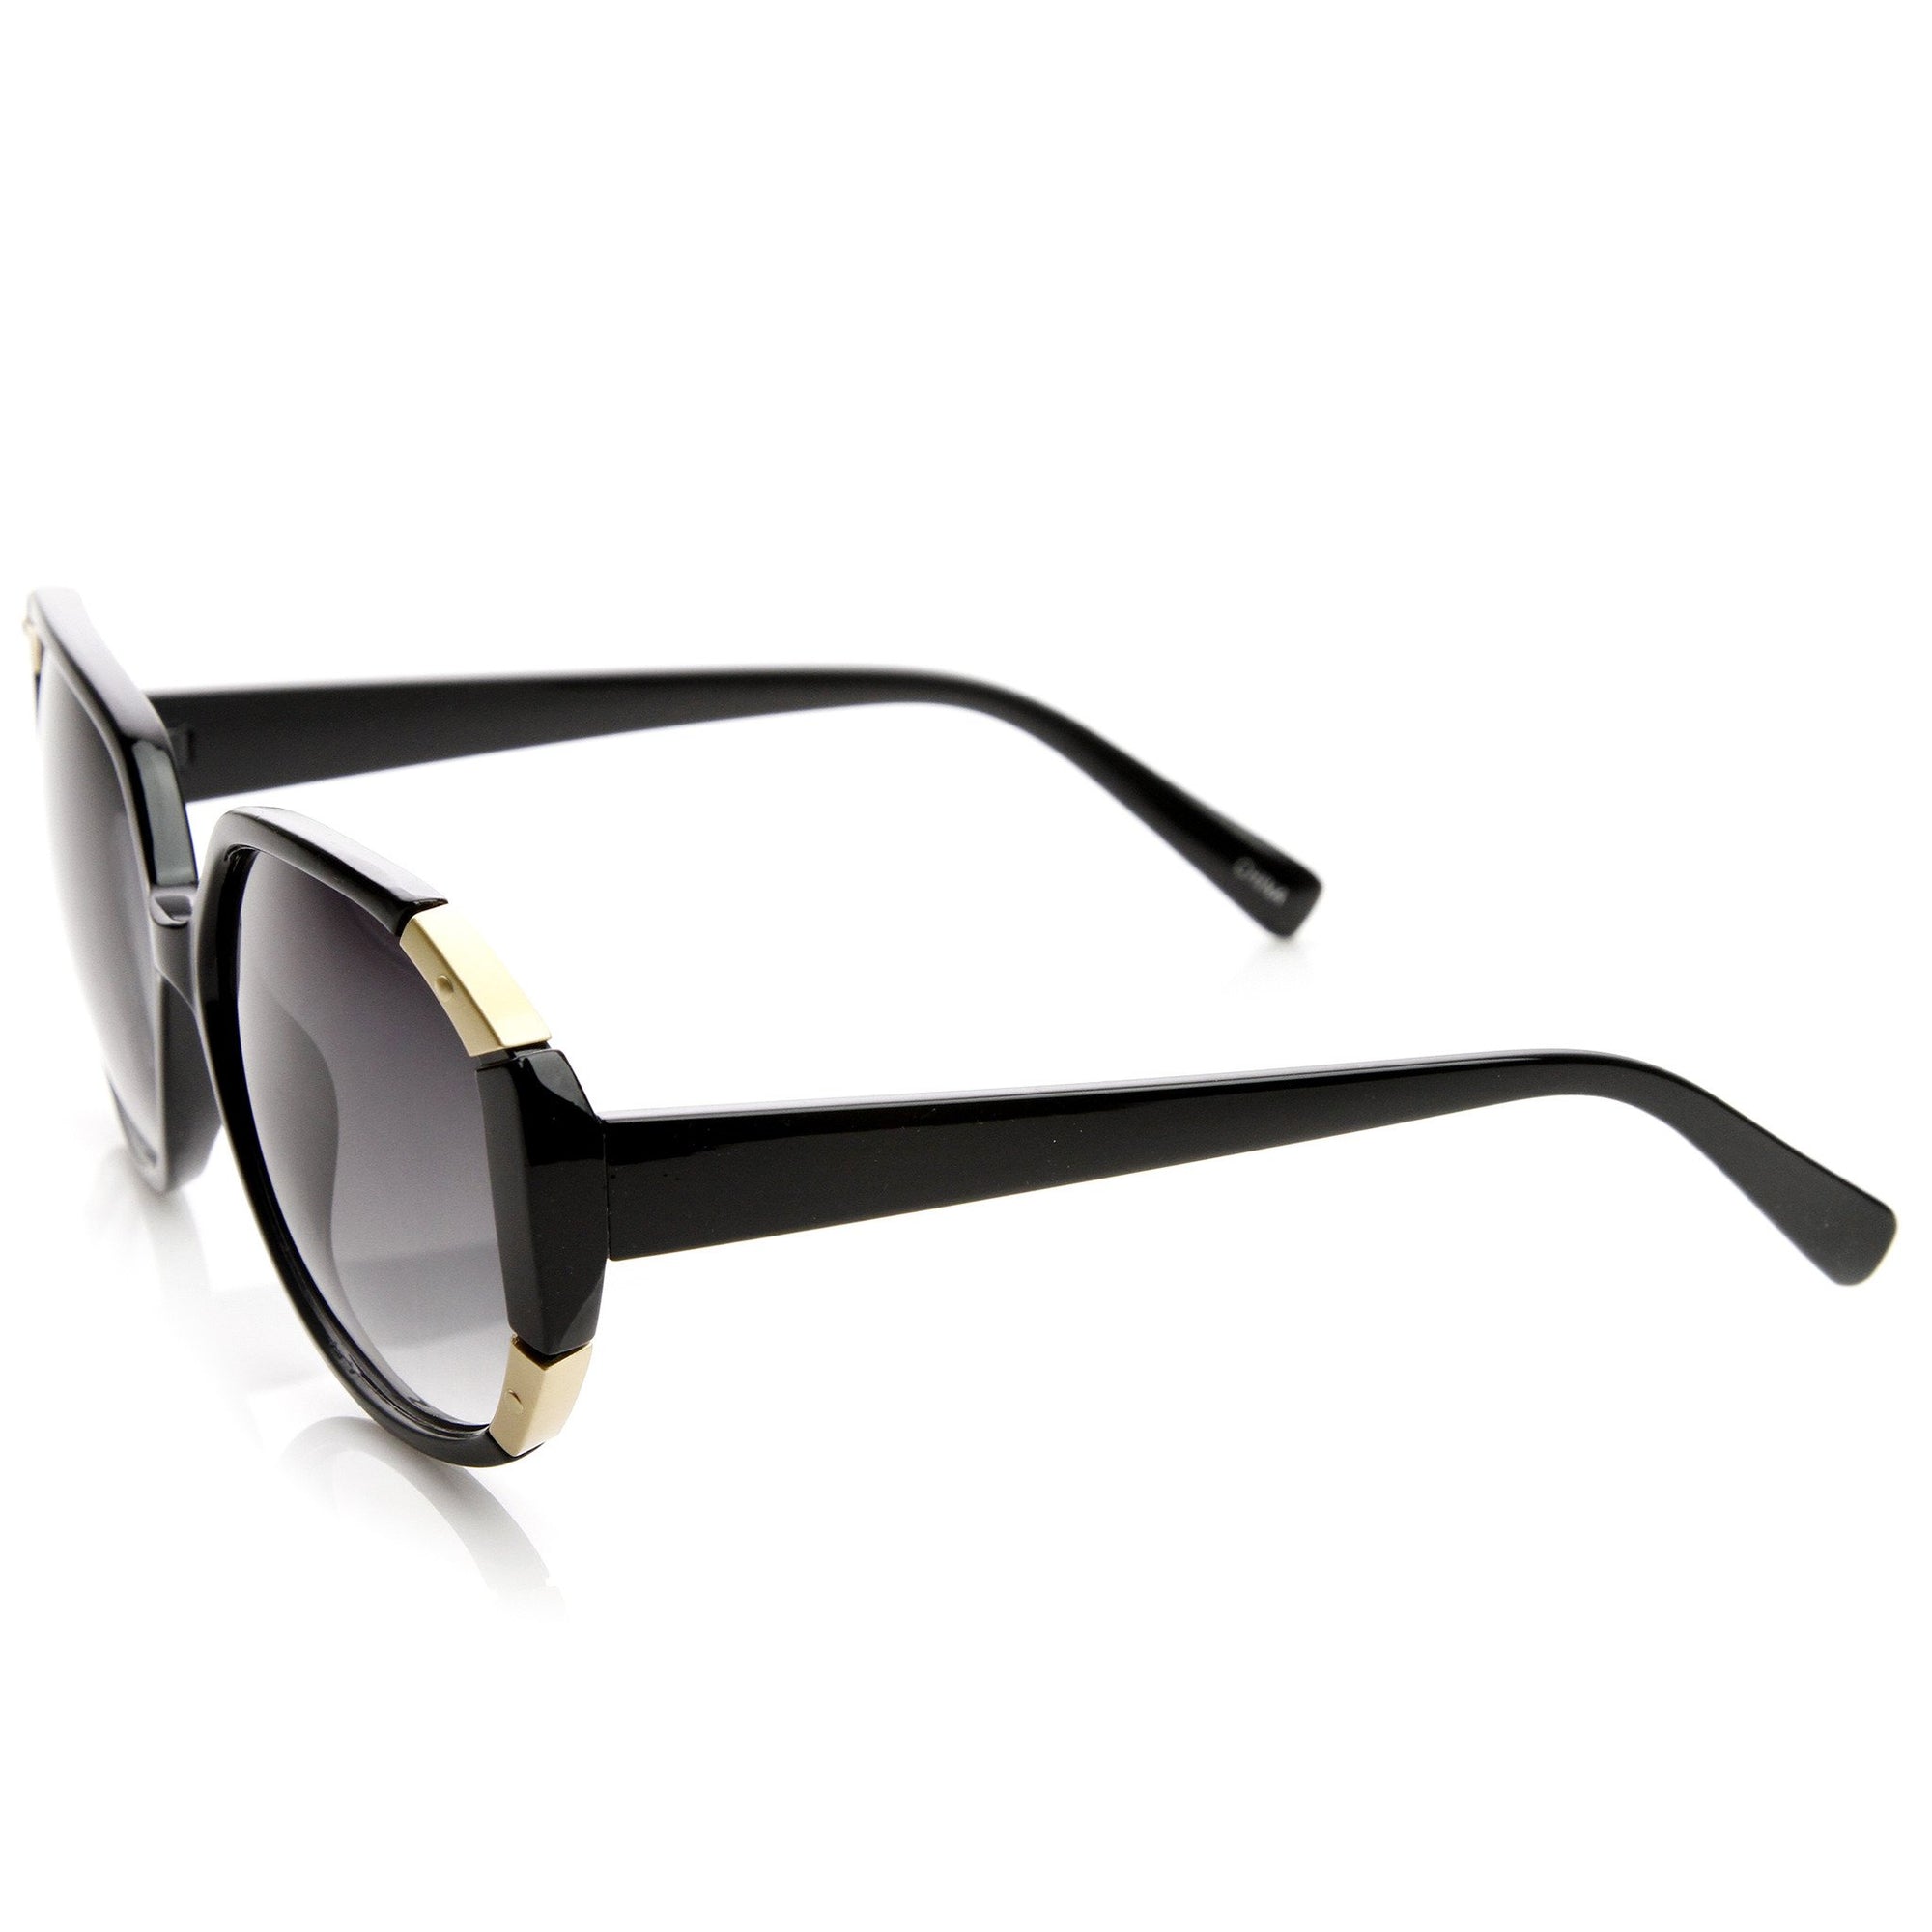 Women's Oversize Square Corner Accented Sunglasses - zeroUV